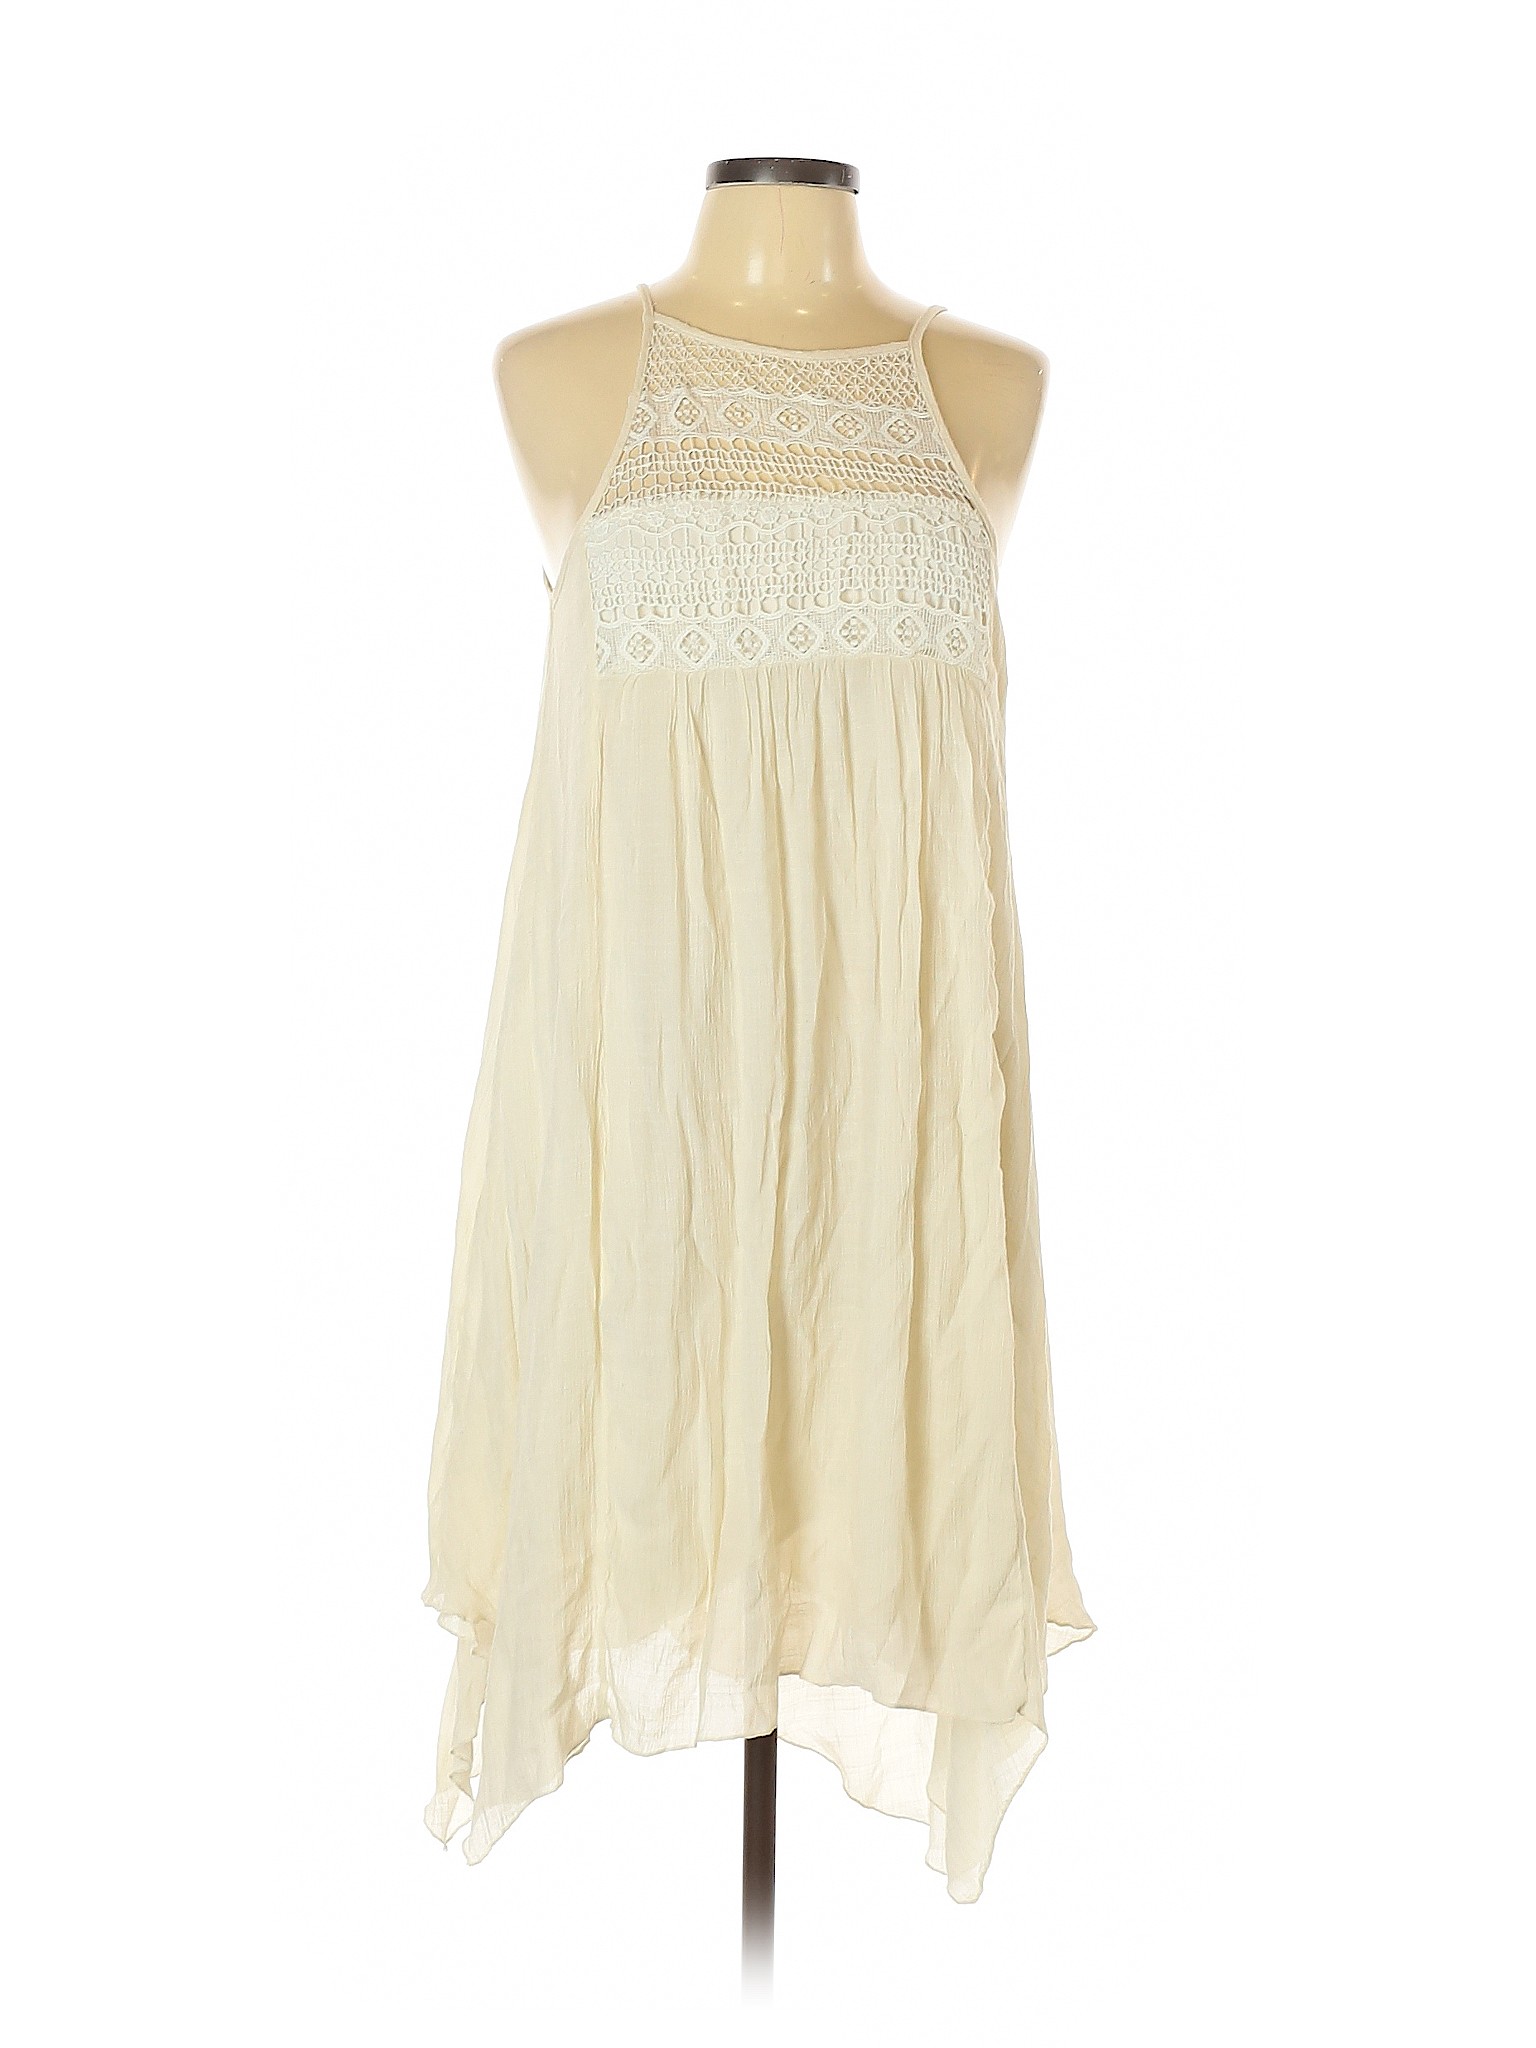 J Gee Women Ivory Casual Dress M | eBay